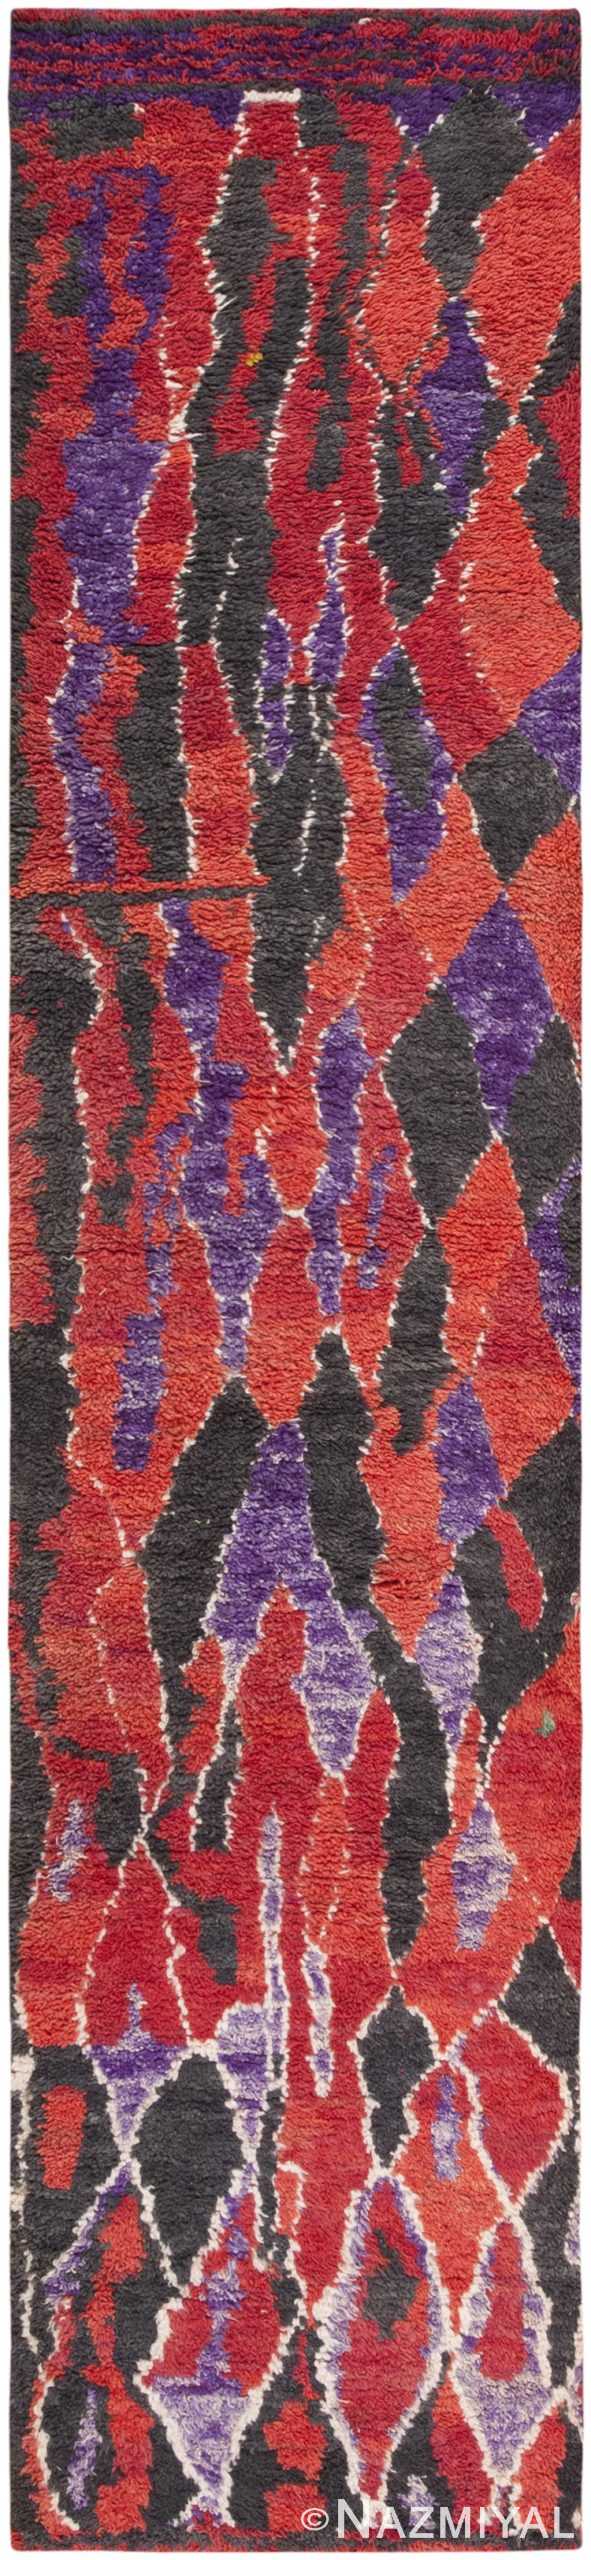 Vintage Moroccan Carpet 46638 (Duplicate) Detail/Large View